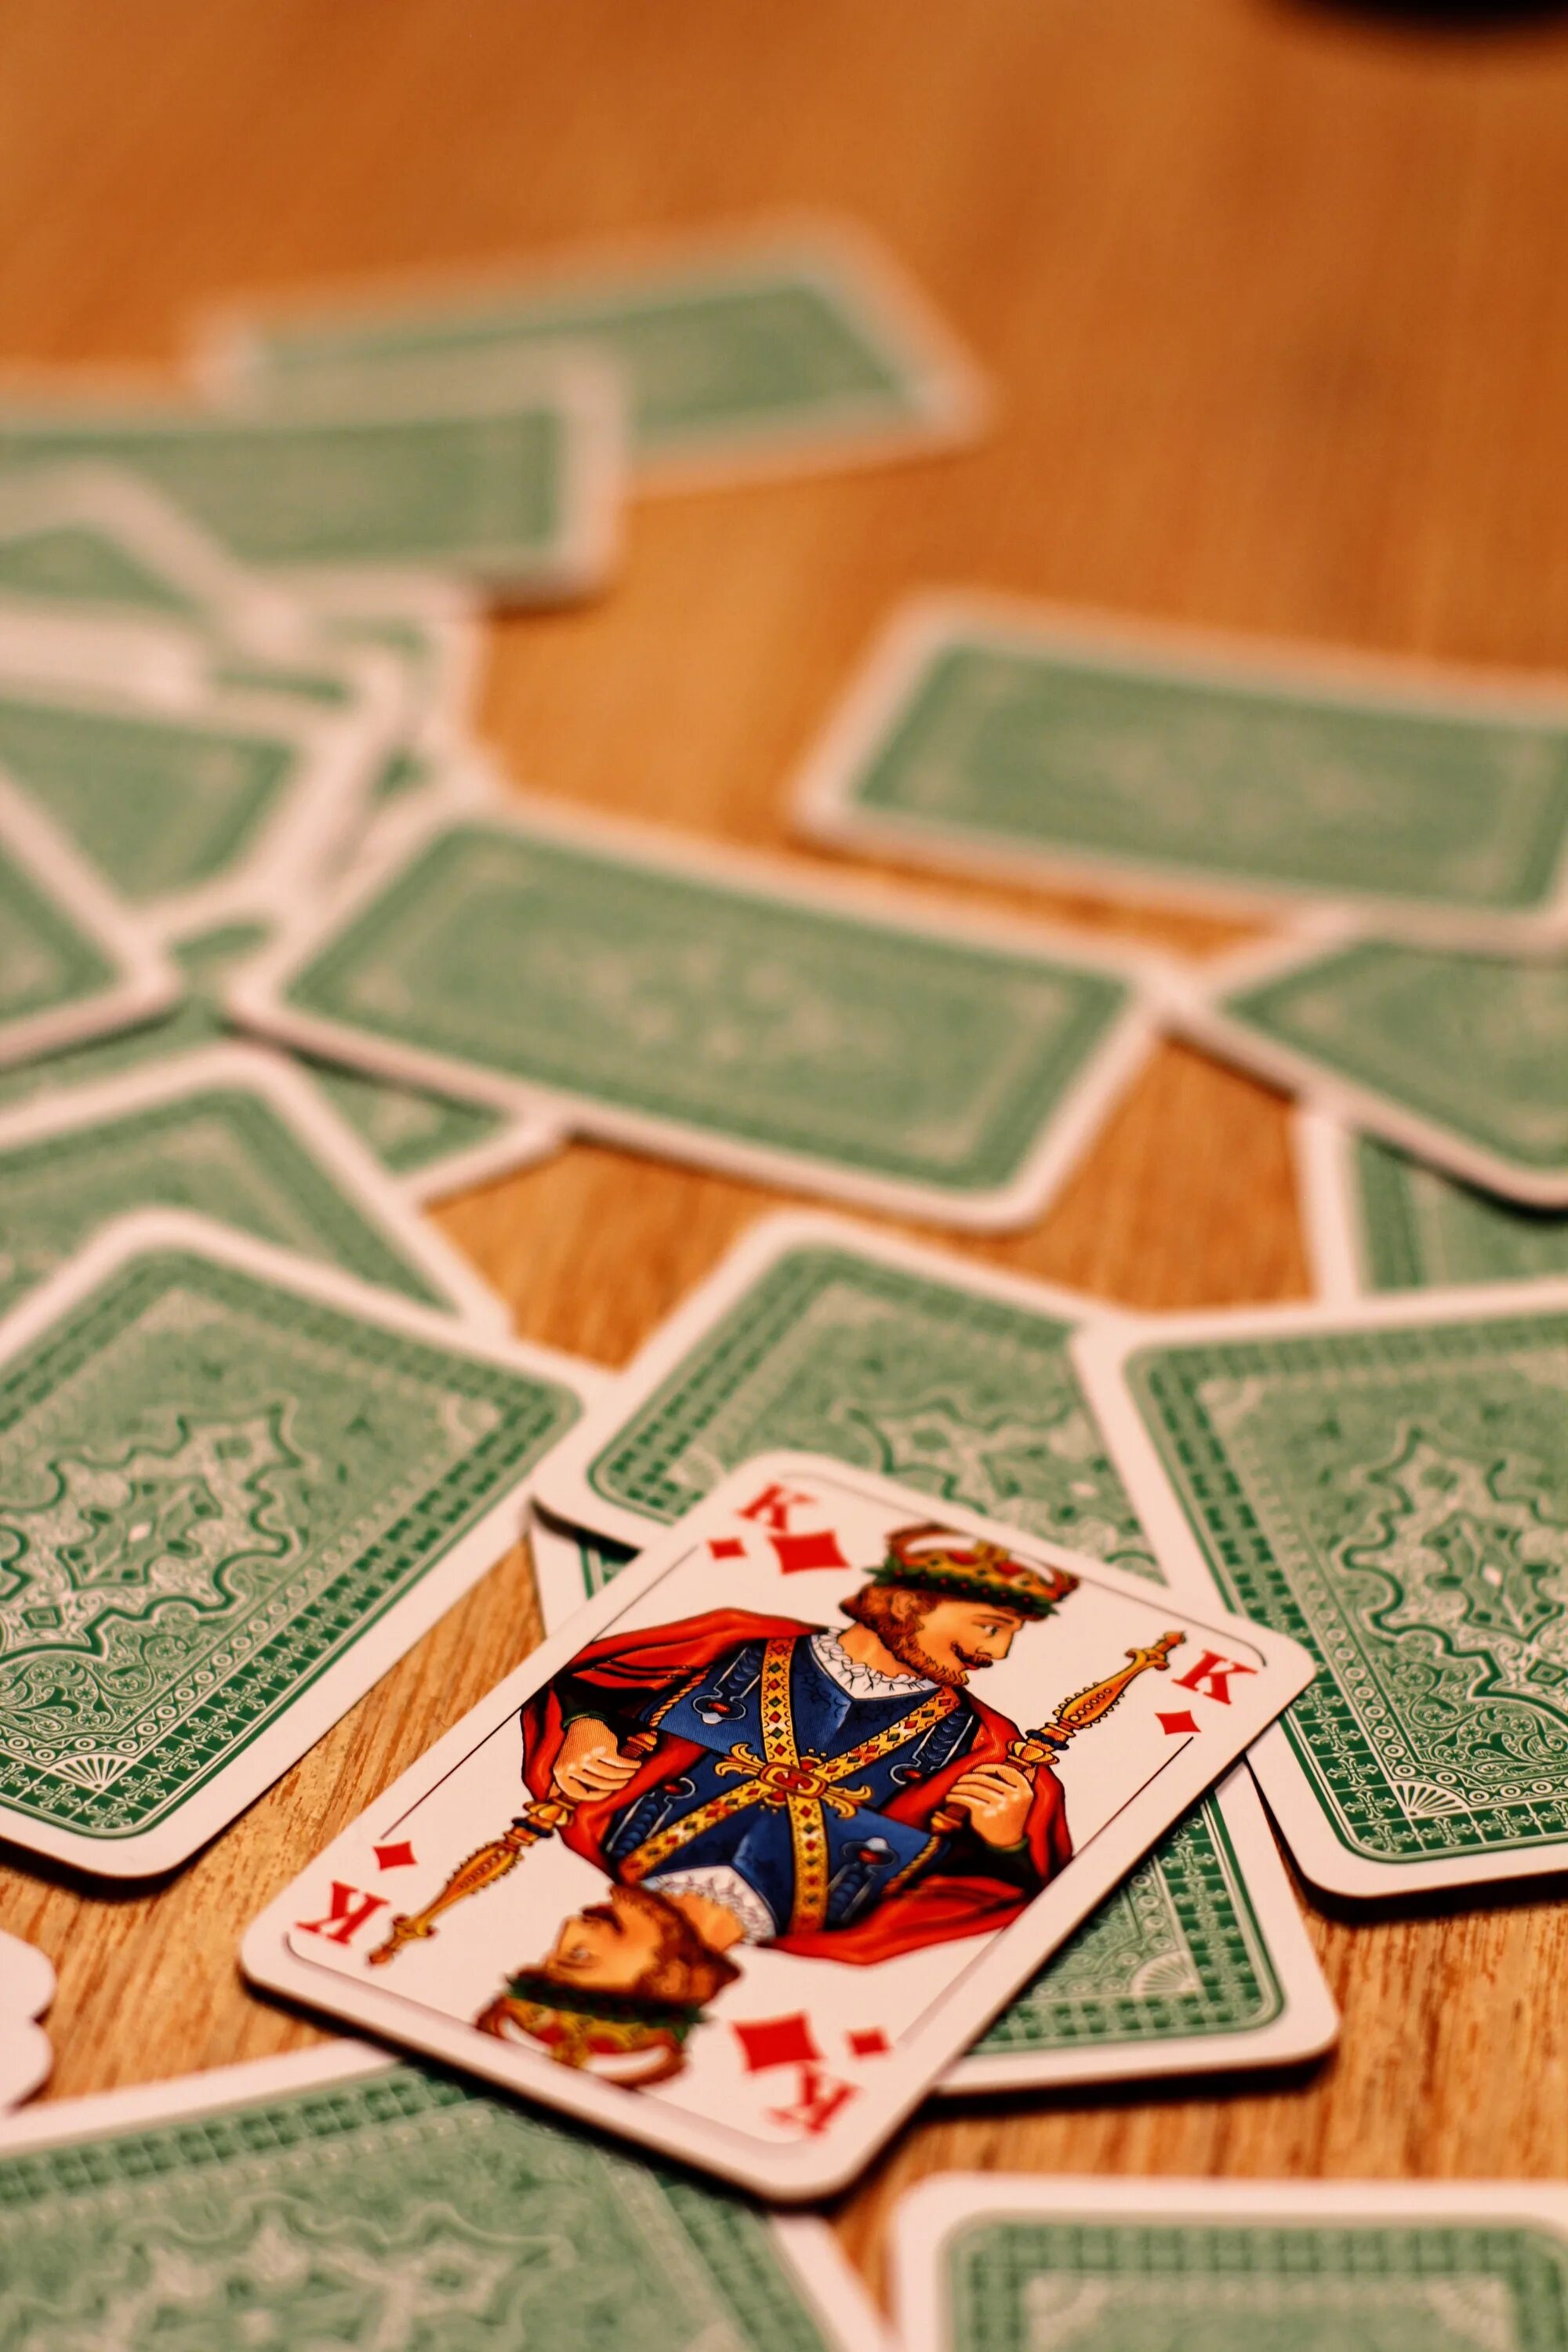 Cards playing games. Карточные игры. Красивые карточные игры. Азартная карточная игра. Карточки в азартных играх.